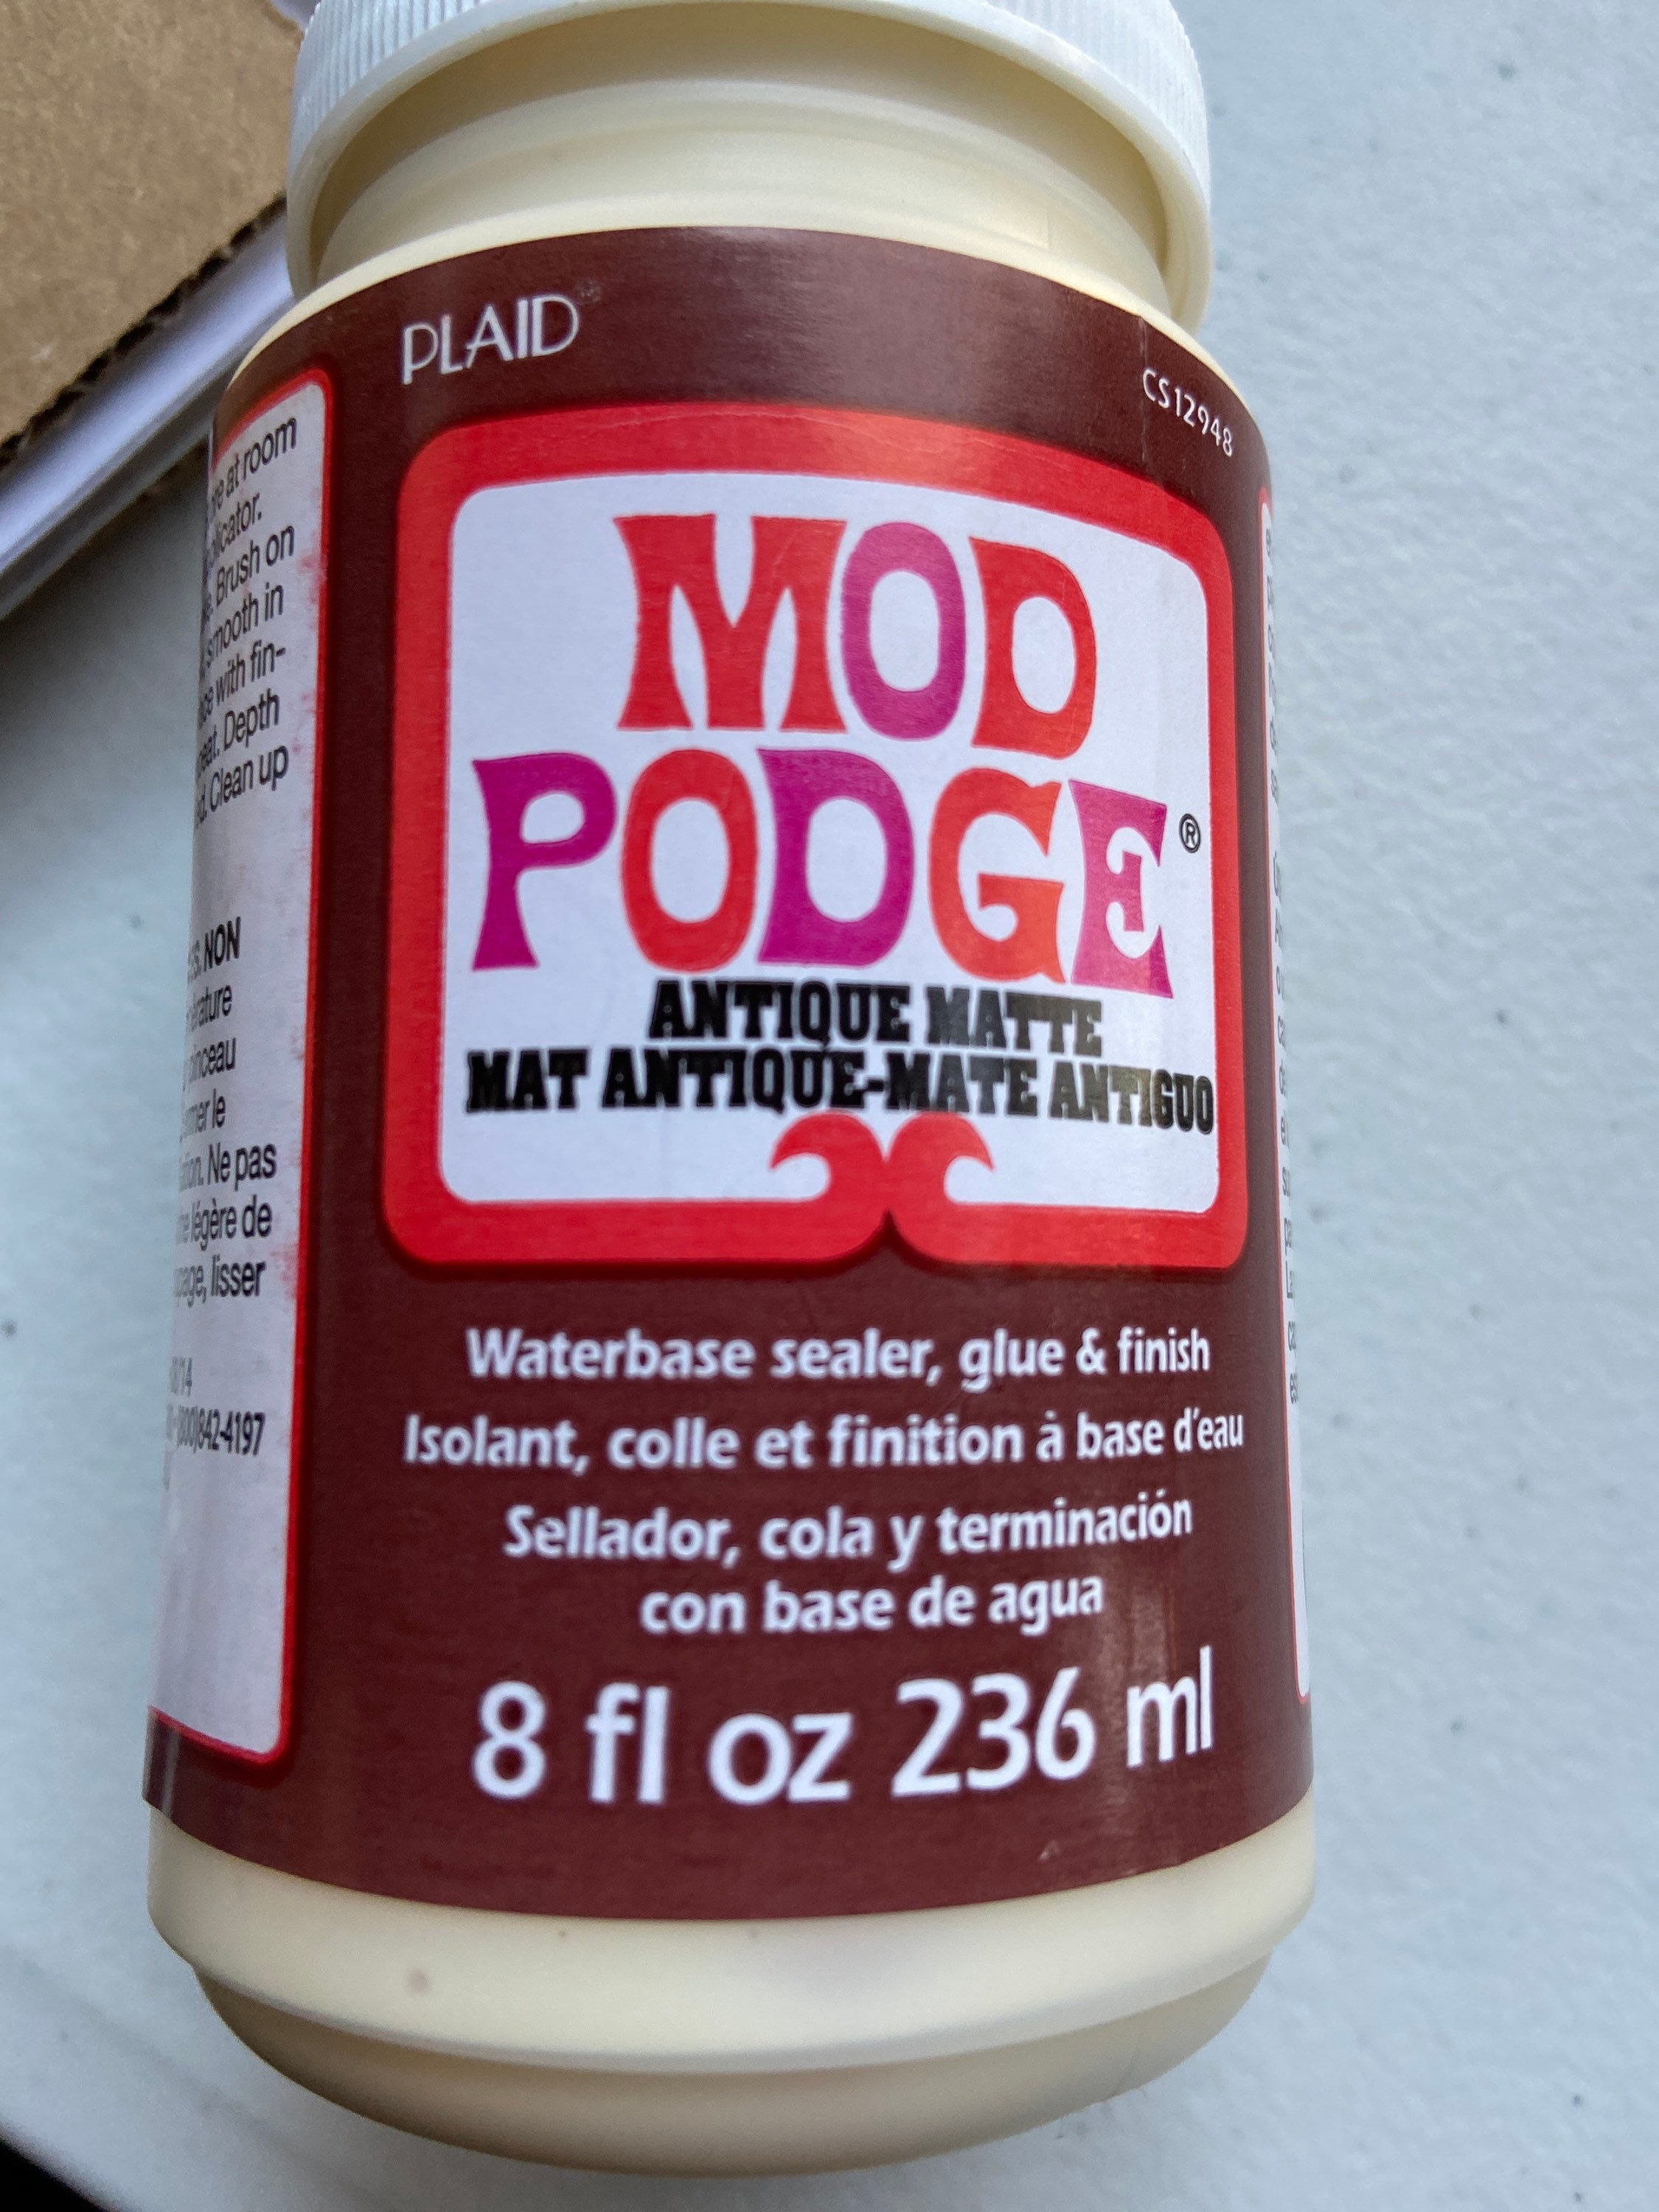 Mod Podge Matte - Puzzle Glue — Paint Your Poison